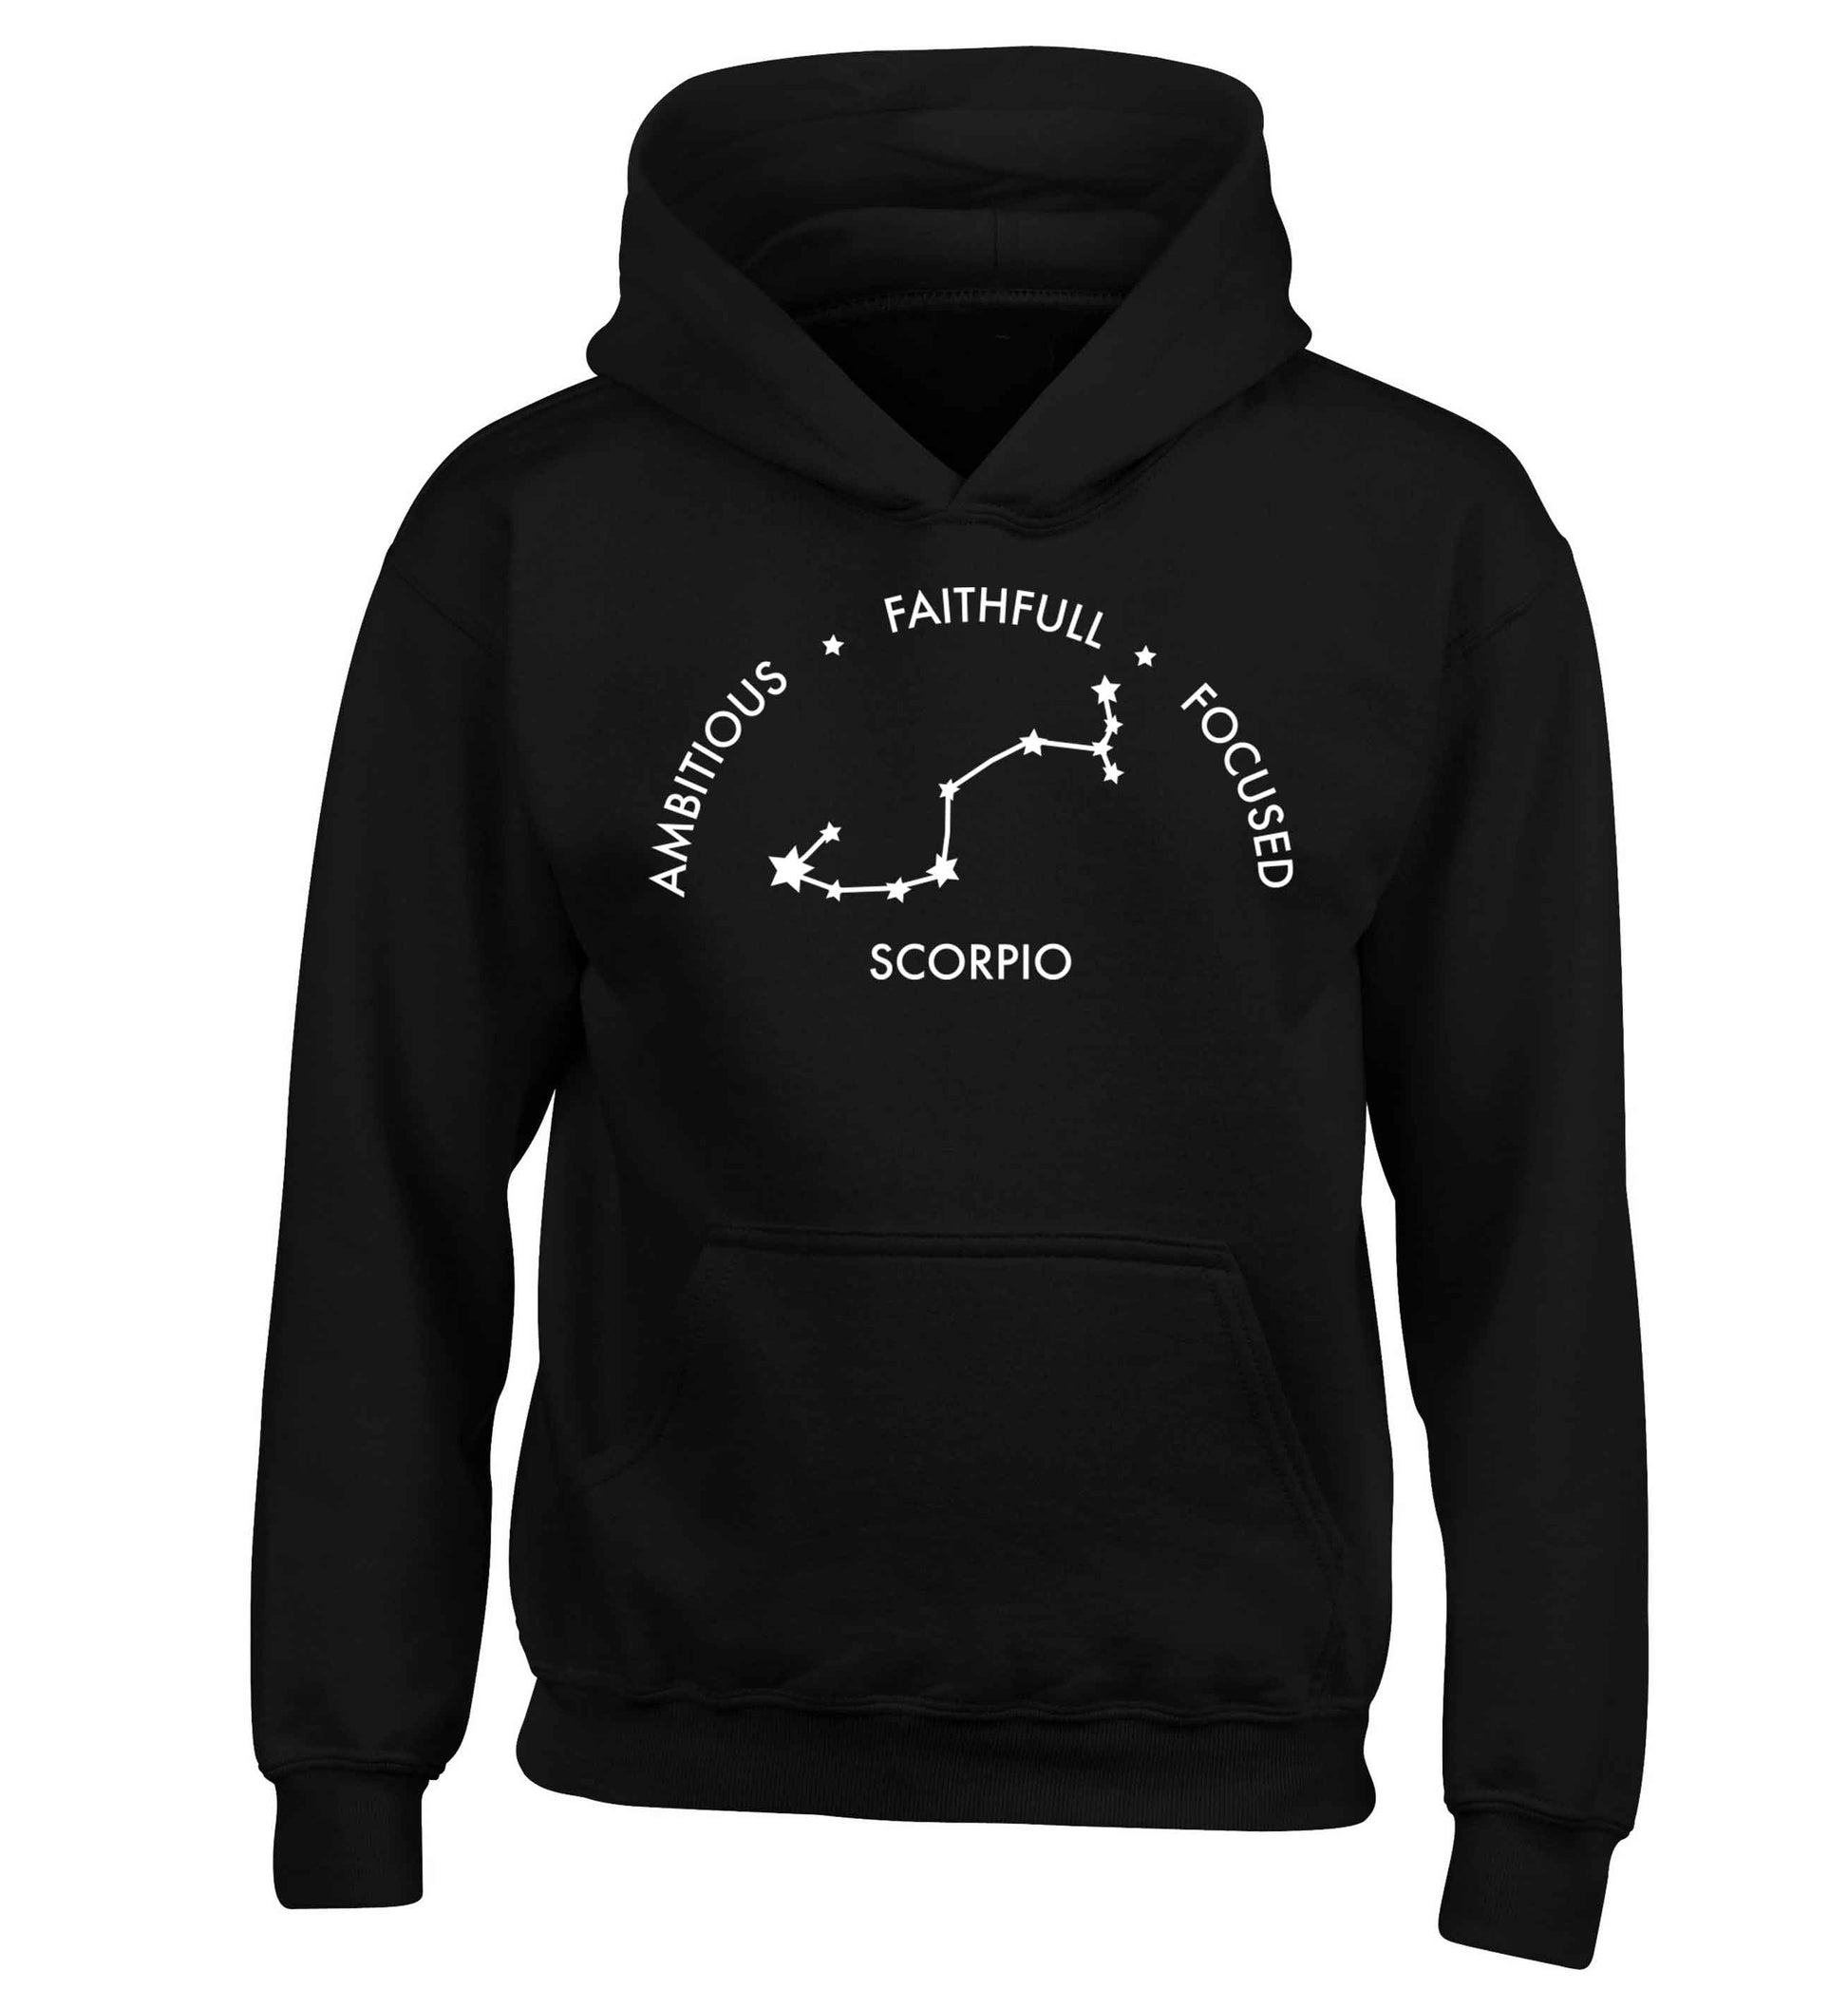 Scorpio, ambitious, faithfull, focused children's black hoodie 12-13 Years